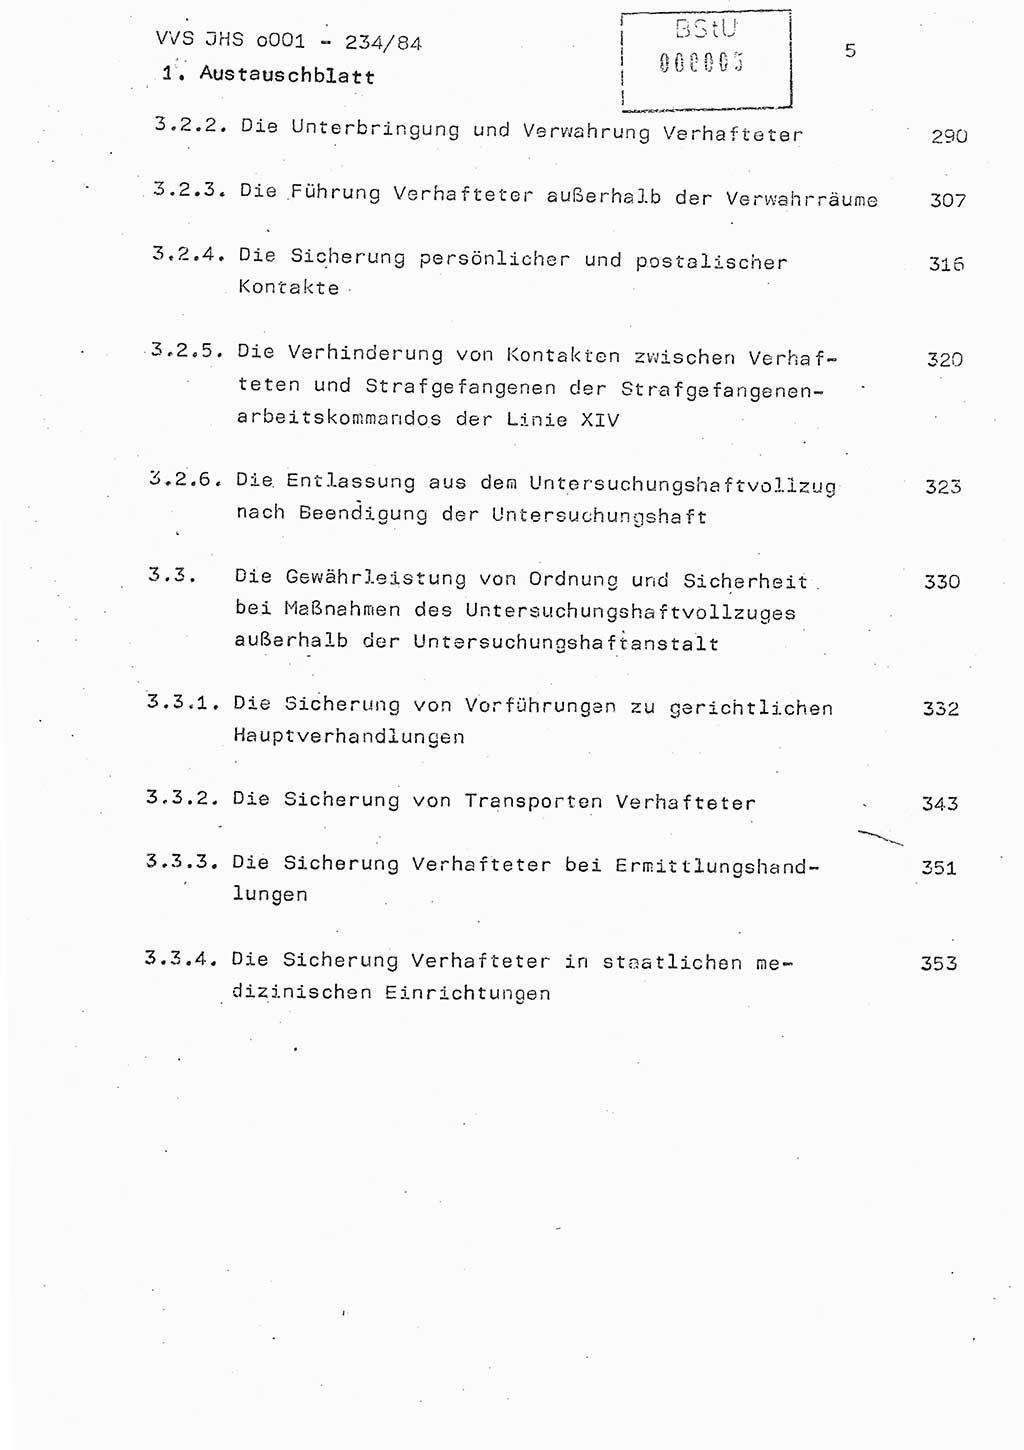 Dissertation Oberst Siegfried Rataizick (Abt. ⅩⅣ), Oberstleutnant Volkmar Heinz (Abt. ⅩⅣ), Oberstleutnant Werner Stein (HA Ⅸ), Hauptmann Heinz Conrad (JHS), Ministerium für Staatssicherheit (MfS) [Deutsche Demokratische Republik (DDR)], Juristische Hochschule (JHS), Vertrauliche Verschlußsache (VVS) o001-234/84, Potsdam 1984, Seite 5 (Diss. MfS DDR JHS VVS o001-234/84 1984, S. 5)